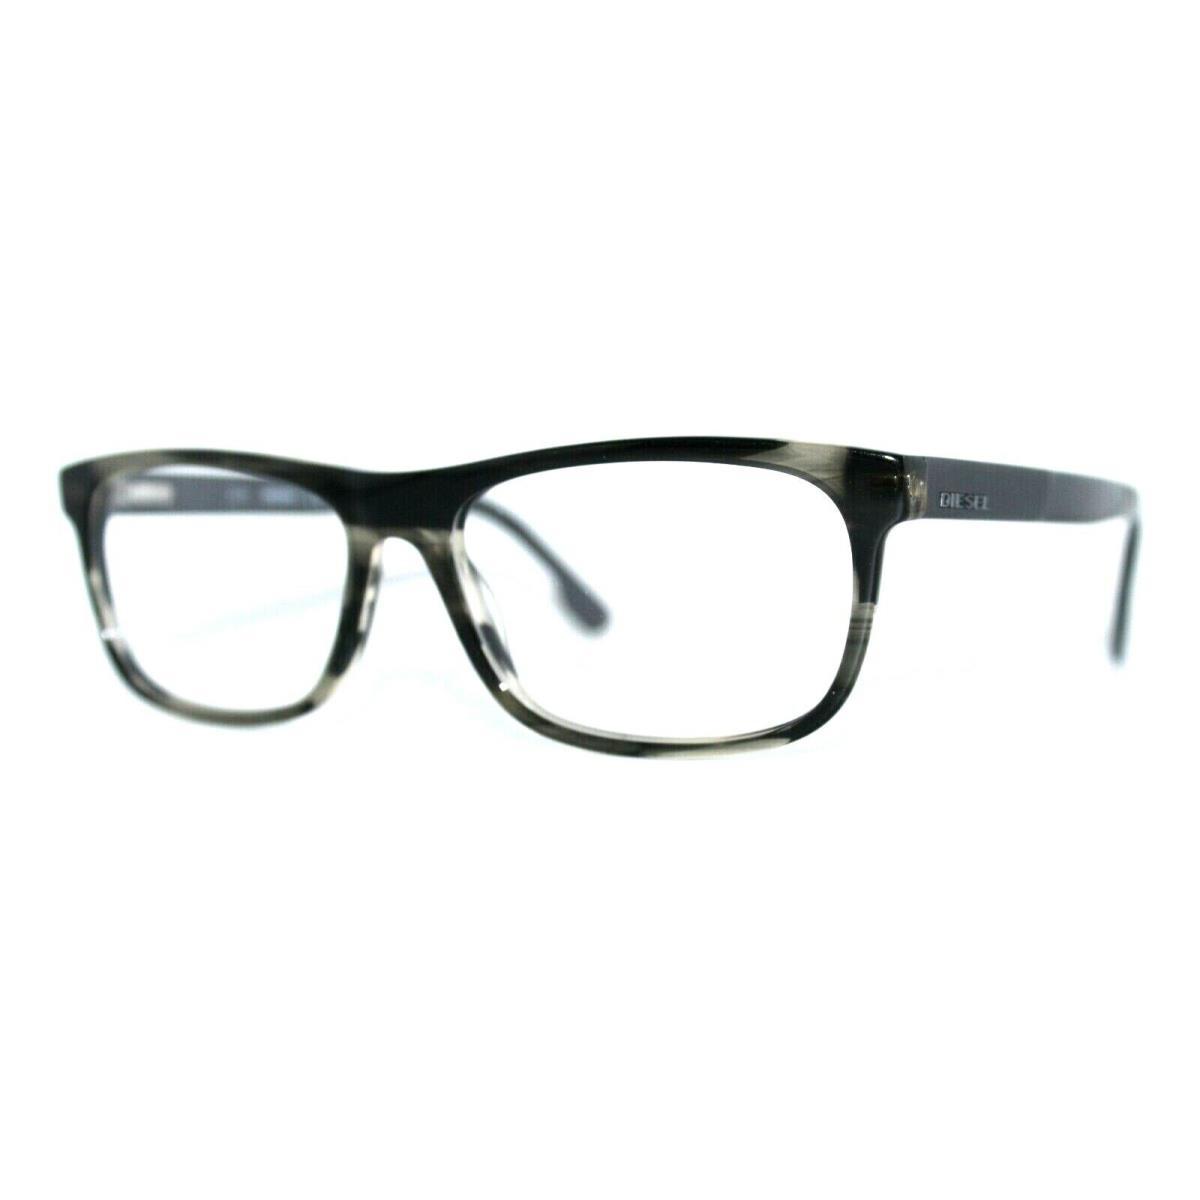 Diesel DL5212 020 Grey Havana Eyeglasses Frames 53-15-145MM W/case